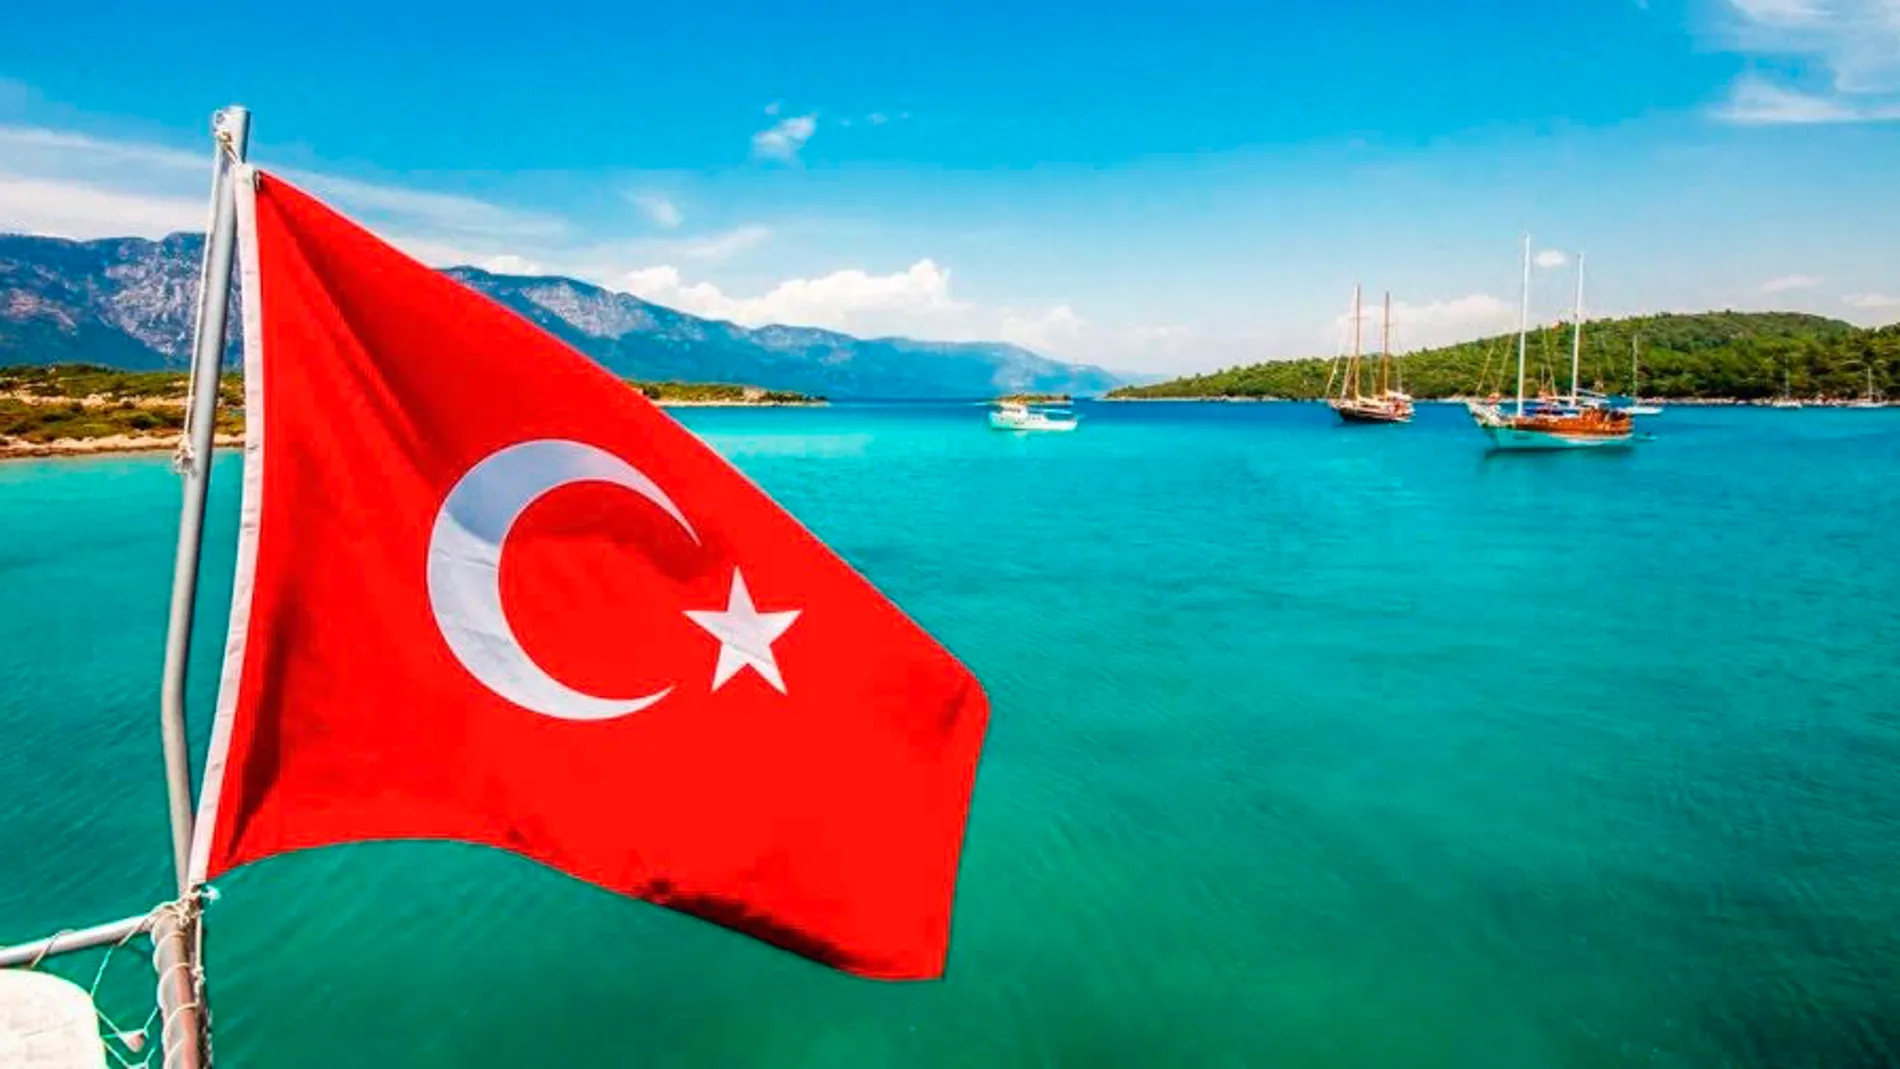 Antalya es uno de los principales destinos turísticos dentro del “Programa de Certificación de Turismo Seguro” (Safe Tourism)